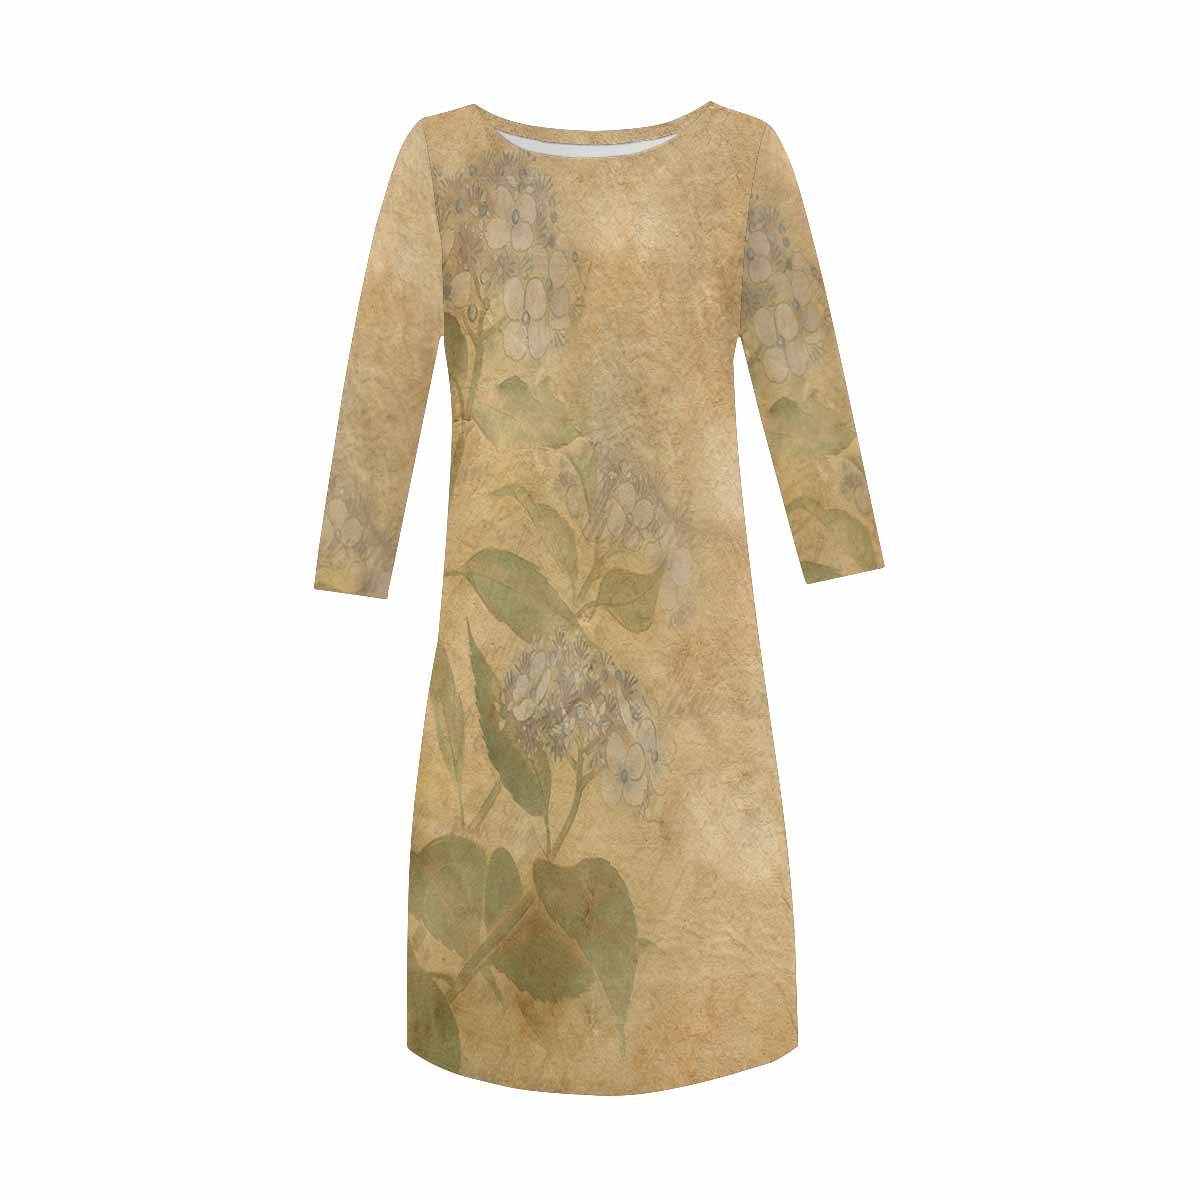 Antique General loose dress, MODEL 29532, design 28